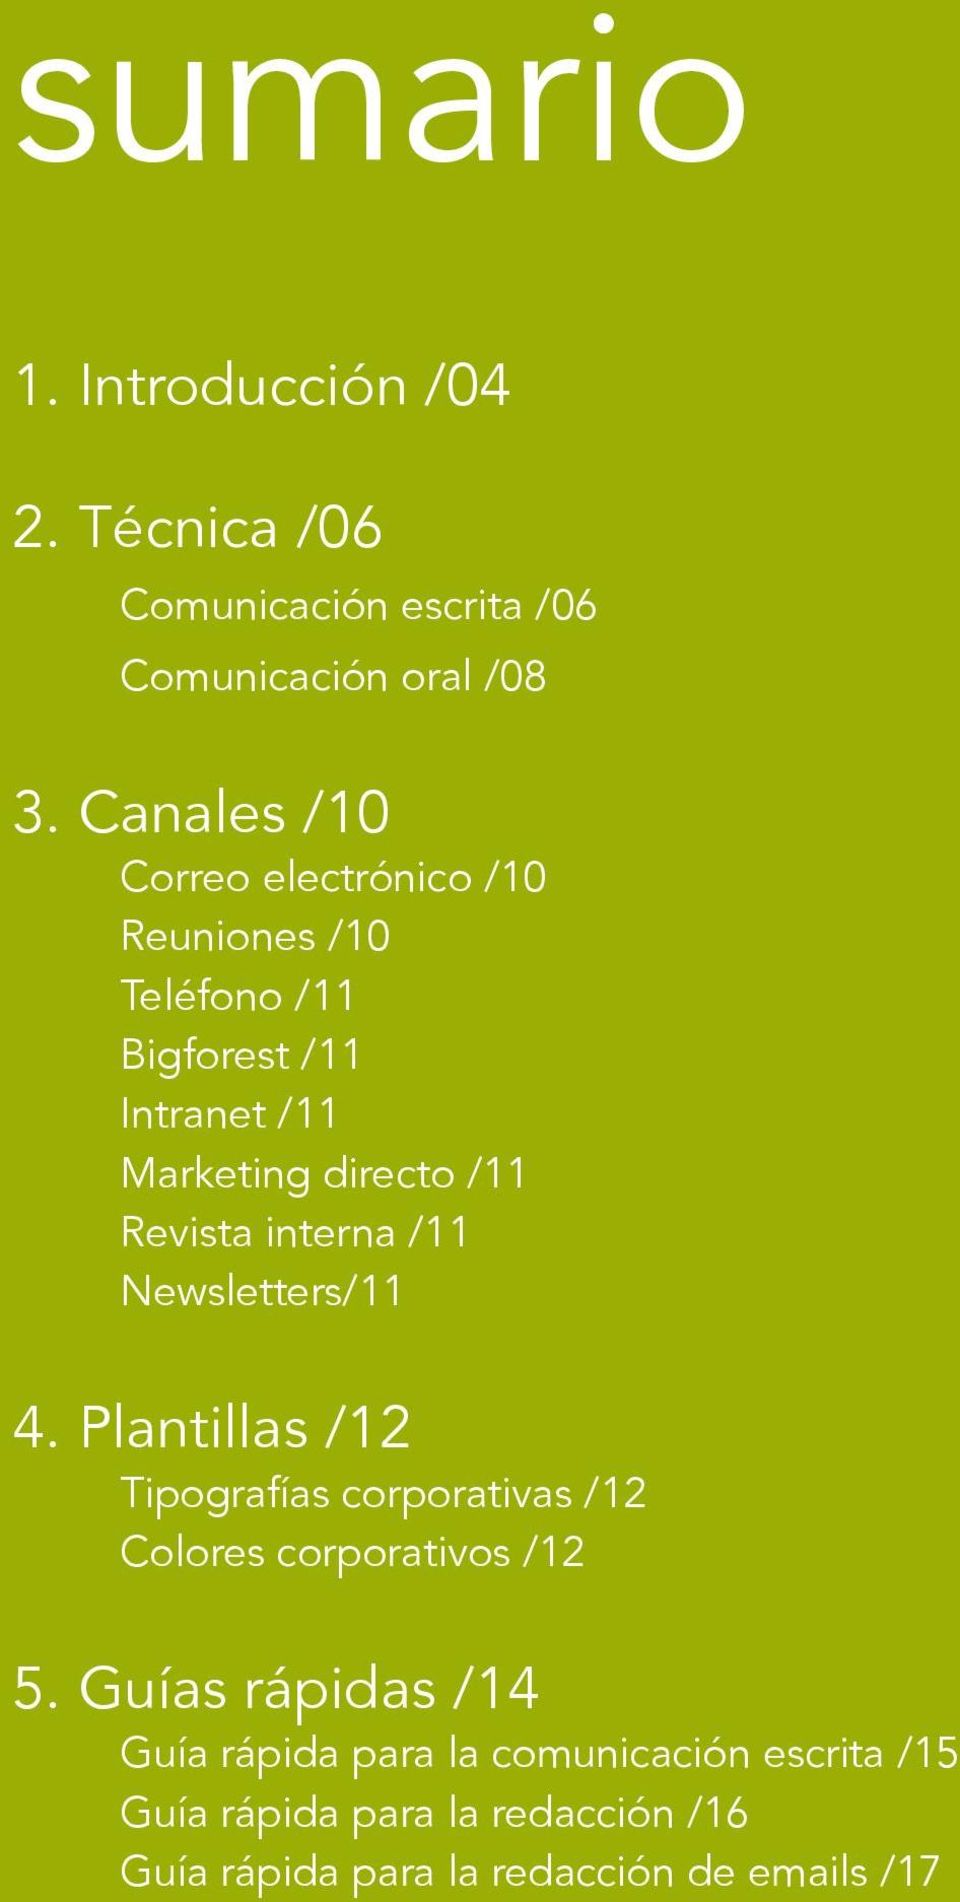 Revista interna /11 Newsletters/11 4. Plantillas /12 Tipografías corporativas /12 Colores corporativos /12 5.